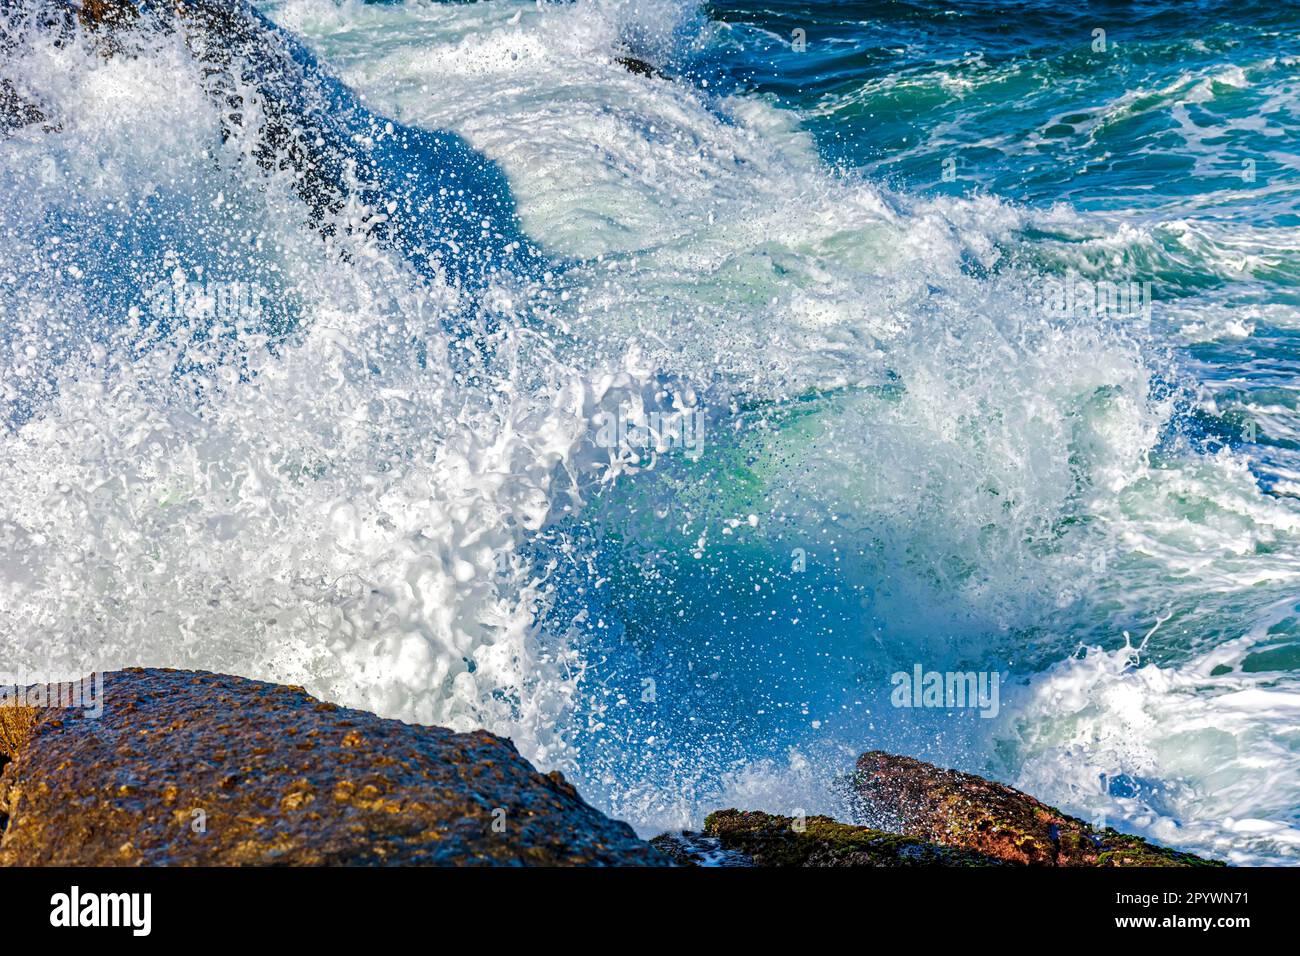 Onda che si schiantano contro le rocce con acqua di mare che spruzzi in aria, Brasile Foto Stock